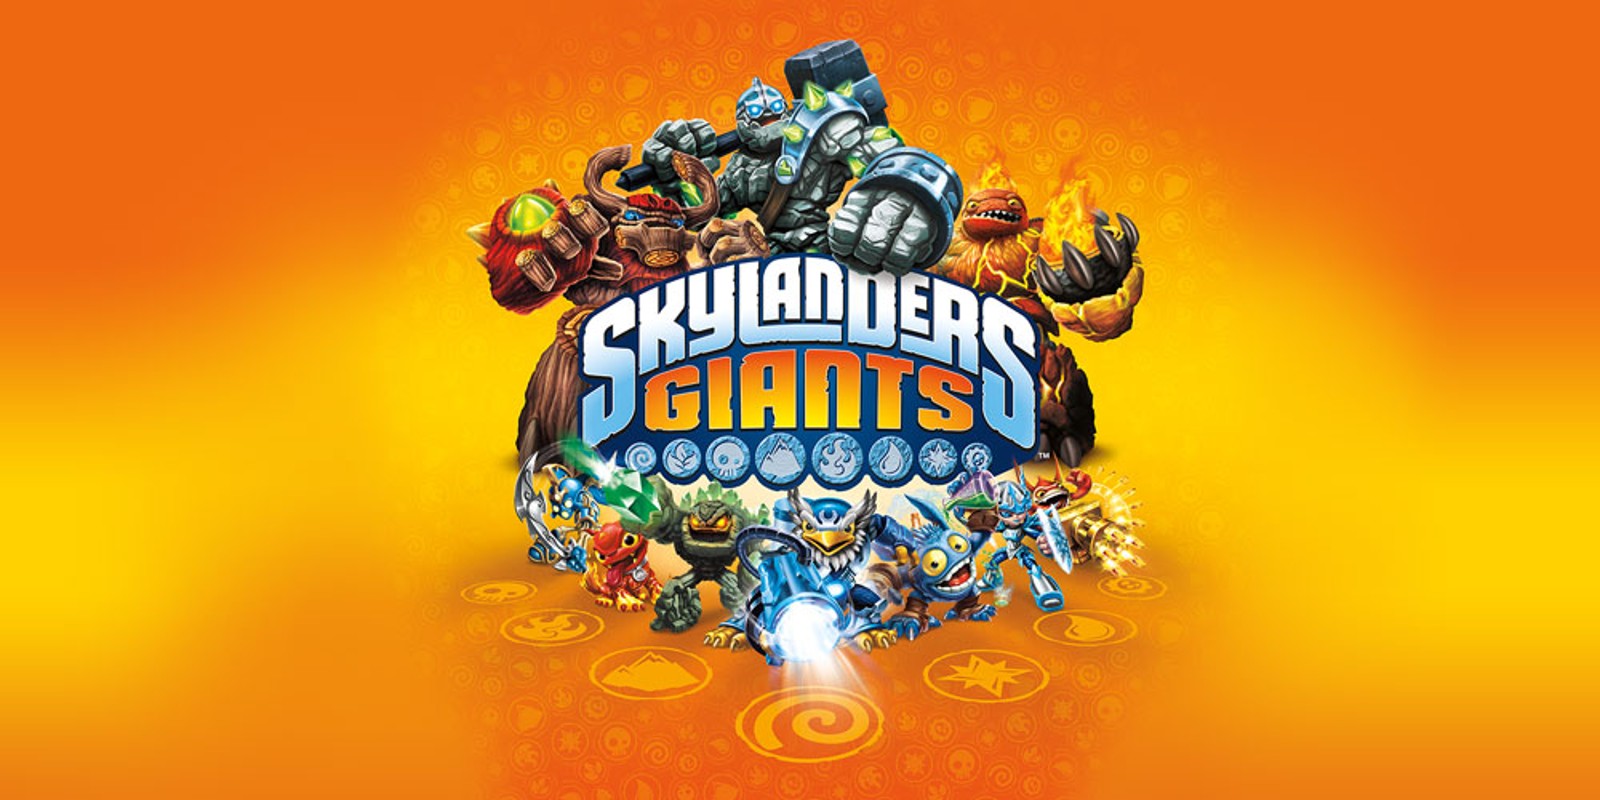 Skylanders Giants | Wii U | Games | Nintendo1600 x 800